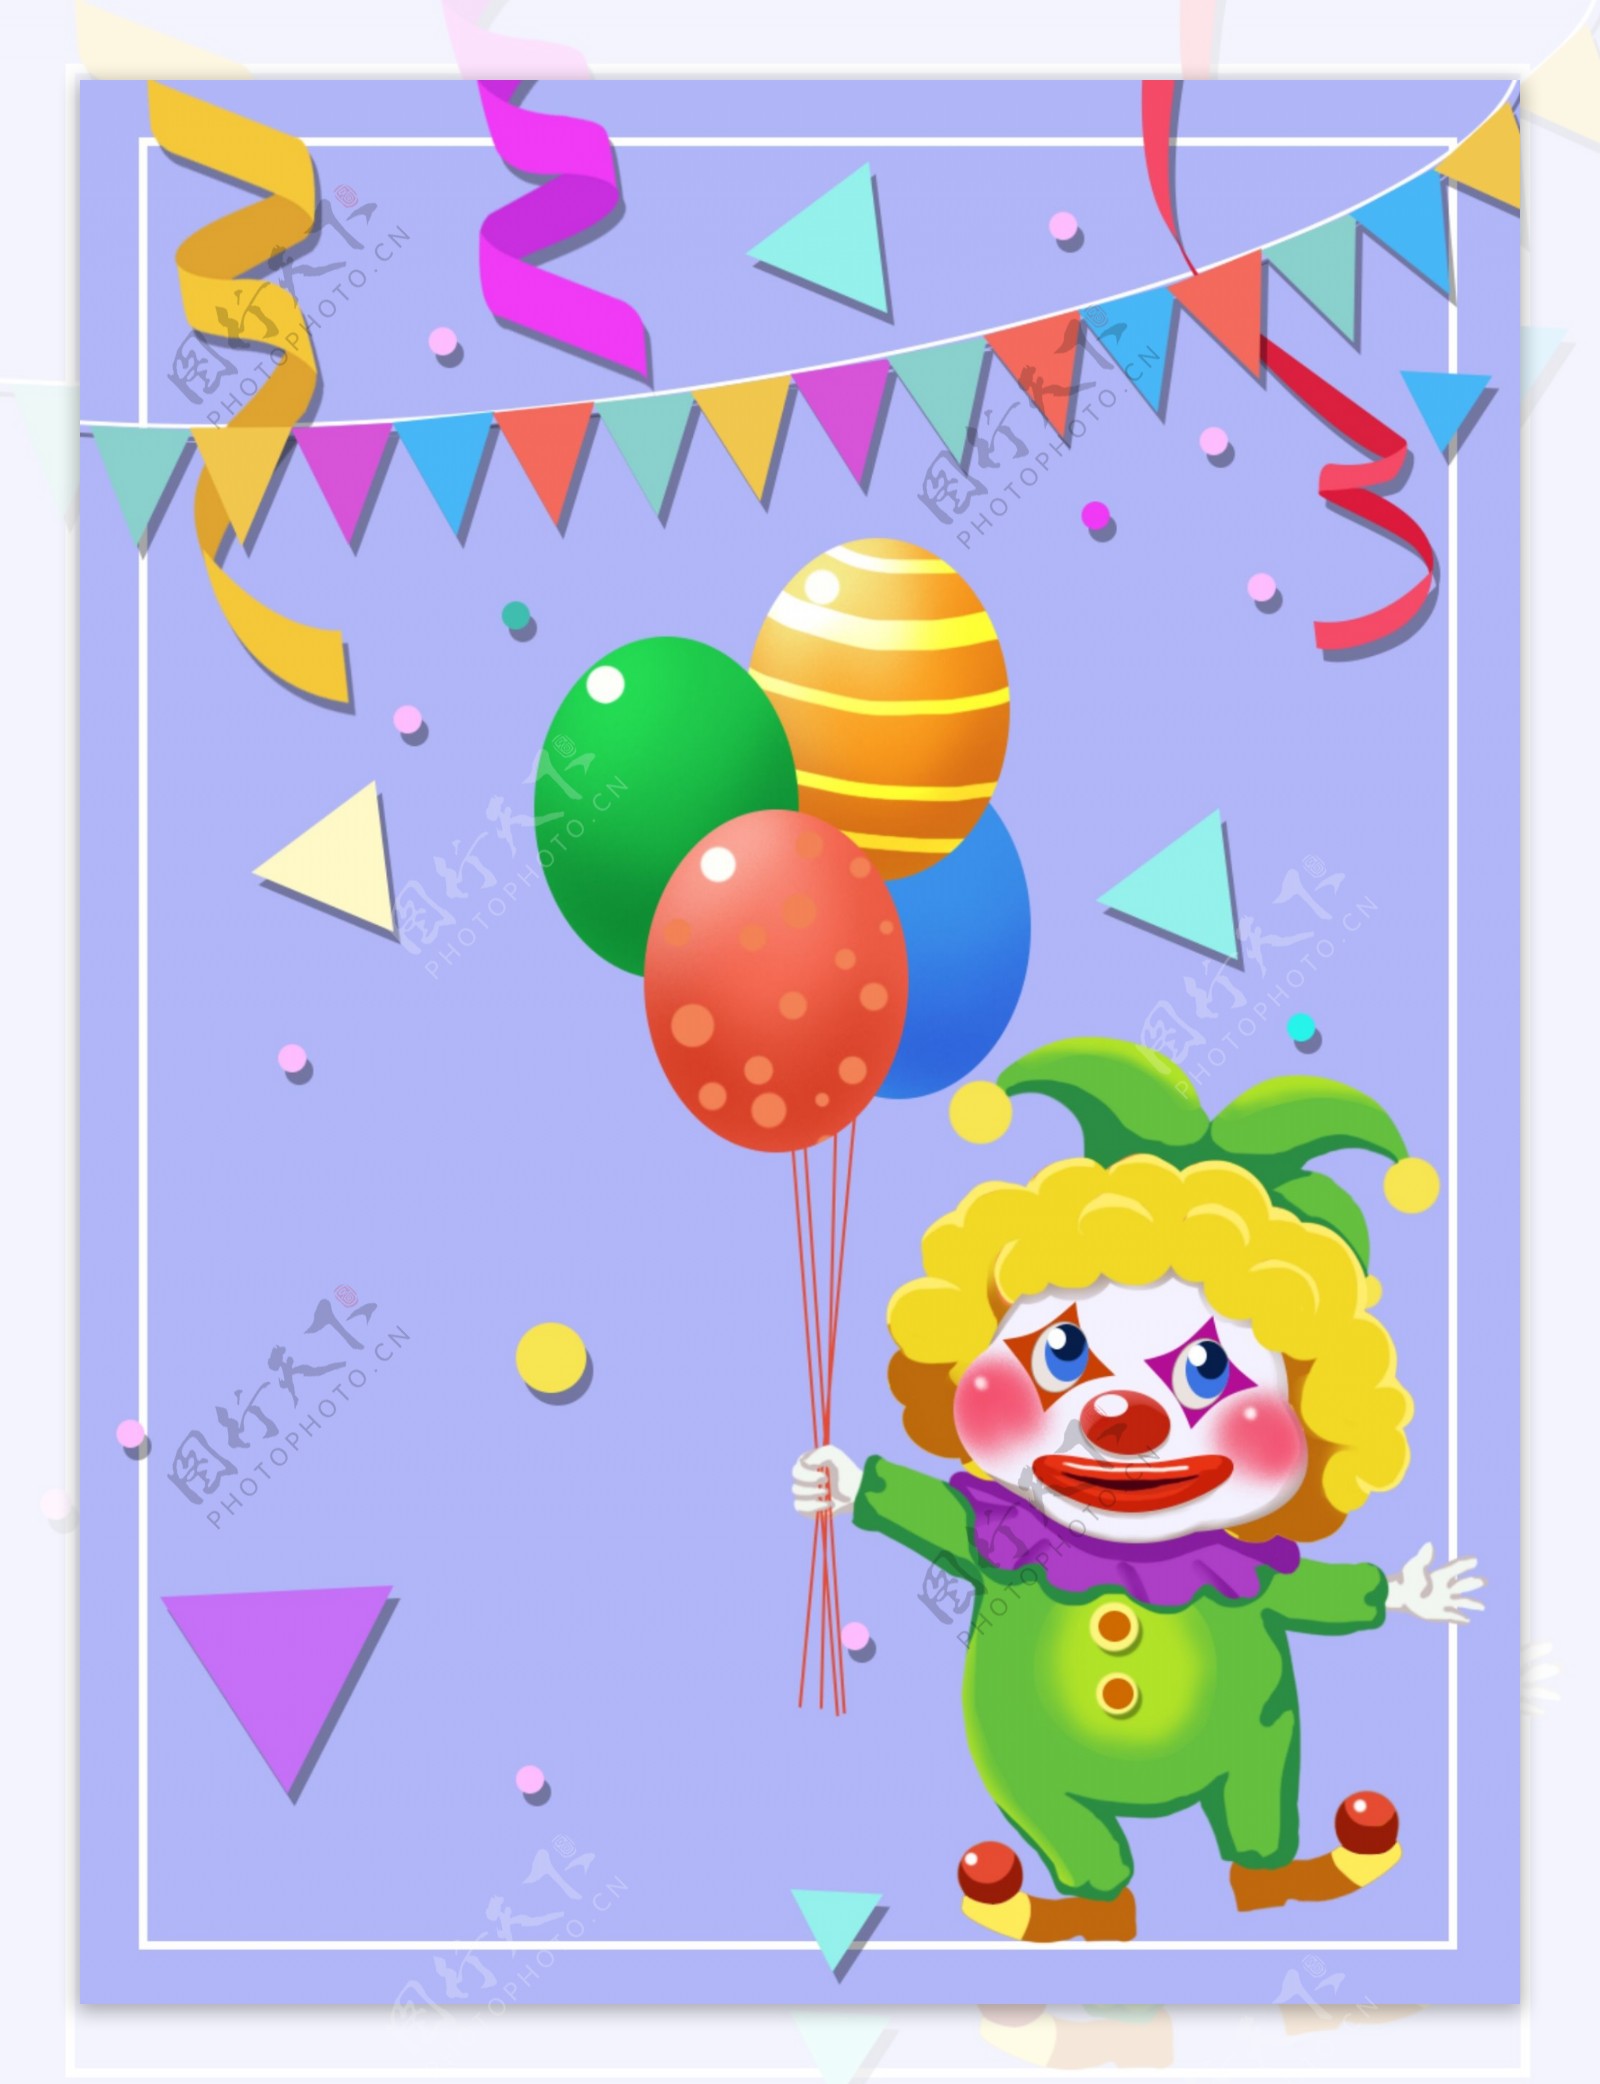 愚人节小丑搞怪气球彩带卡通背景